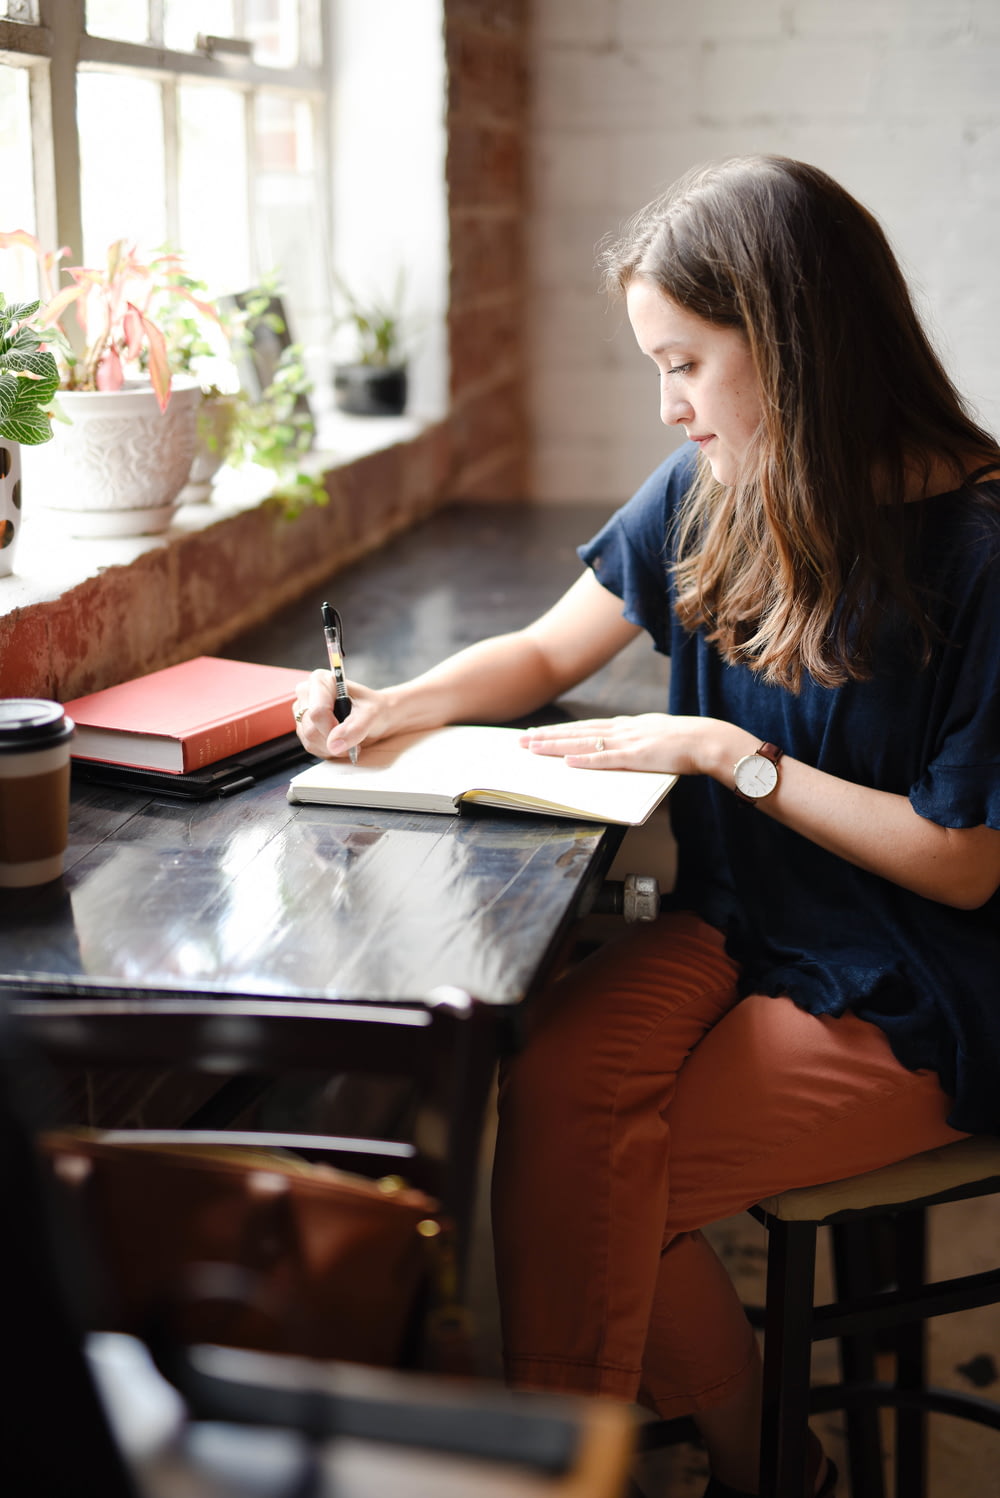 창가 근처의 흰 책에 글을 쓰는 검은 테이블 앞에 앉아있는 여자